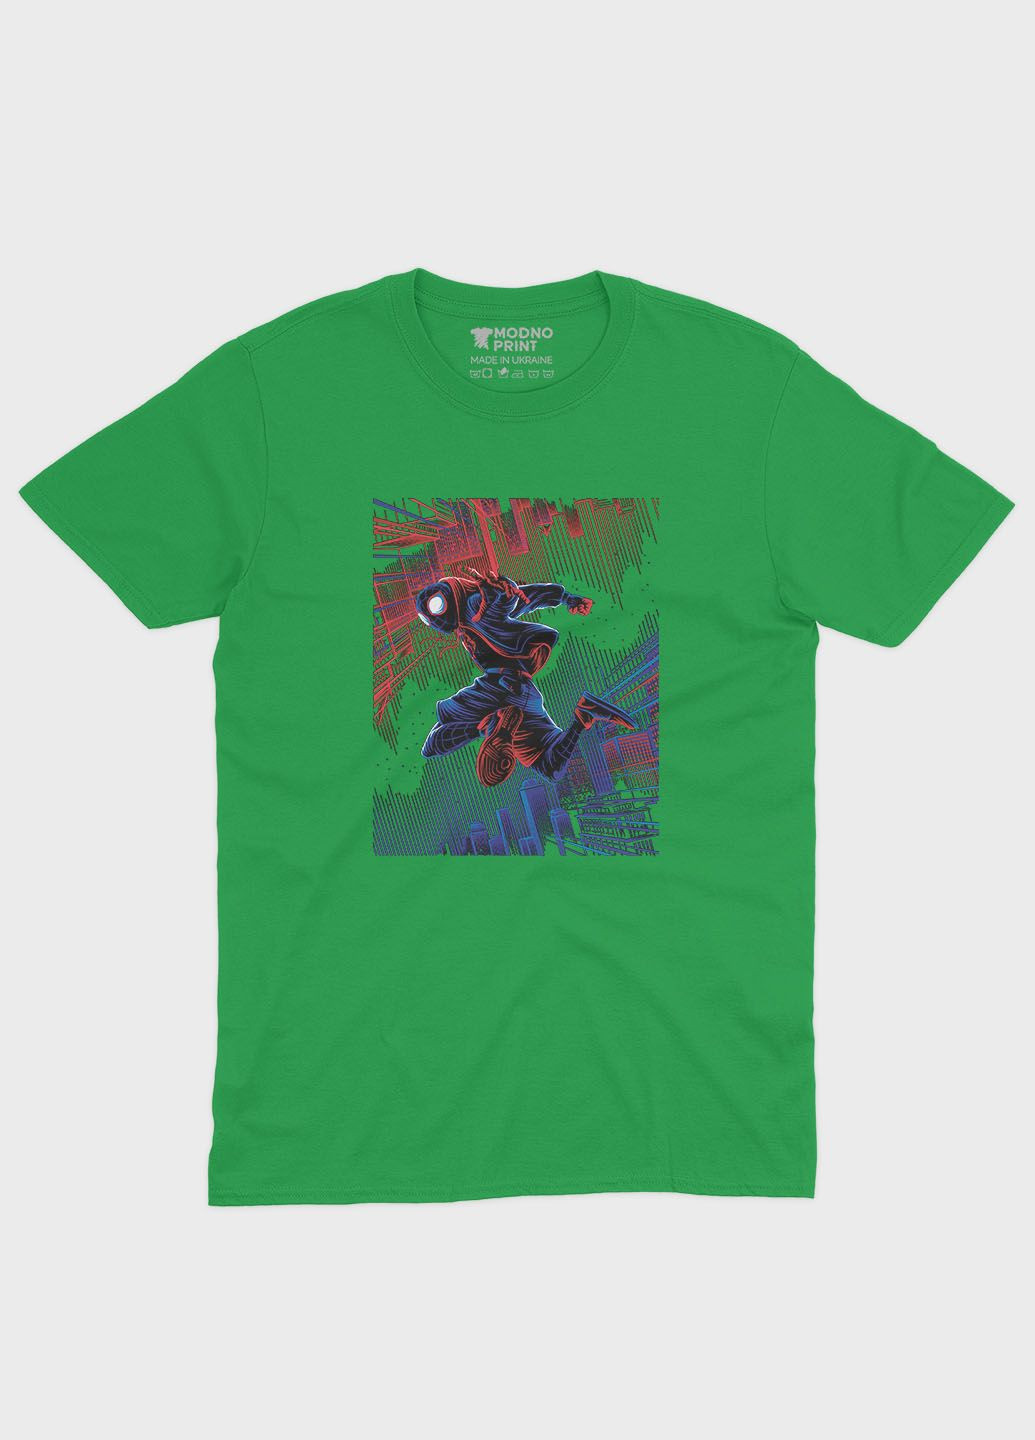 Зеленая демисезонная футболка для мальчика с принтом супергероя - человек-паук (ts001-1-keg-006-014-061-b) Modno